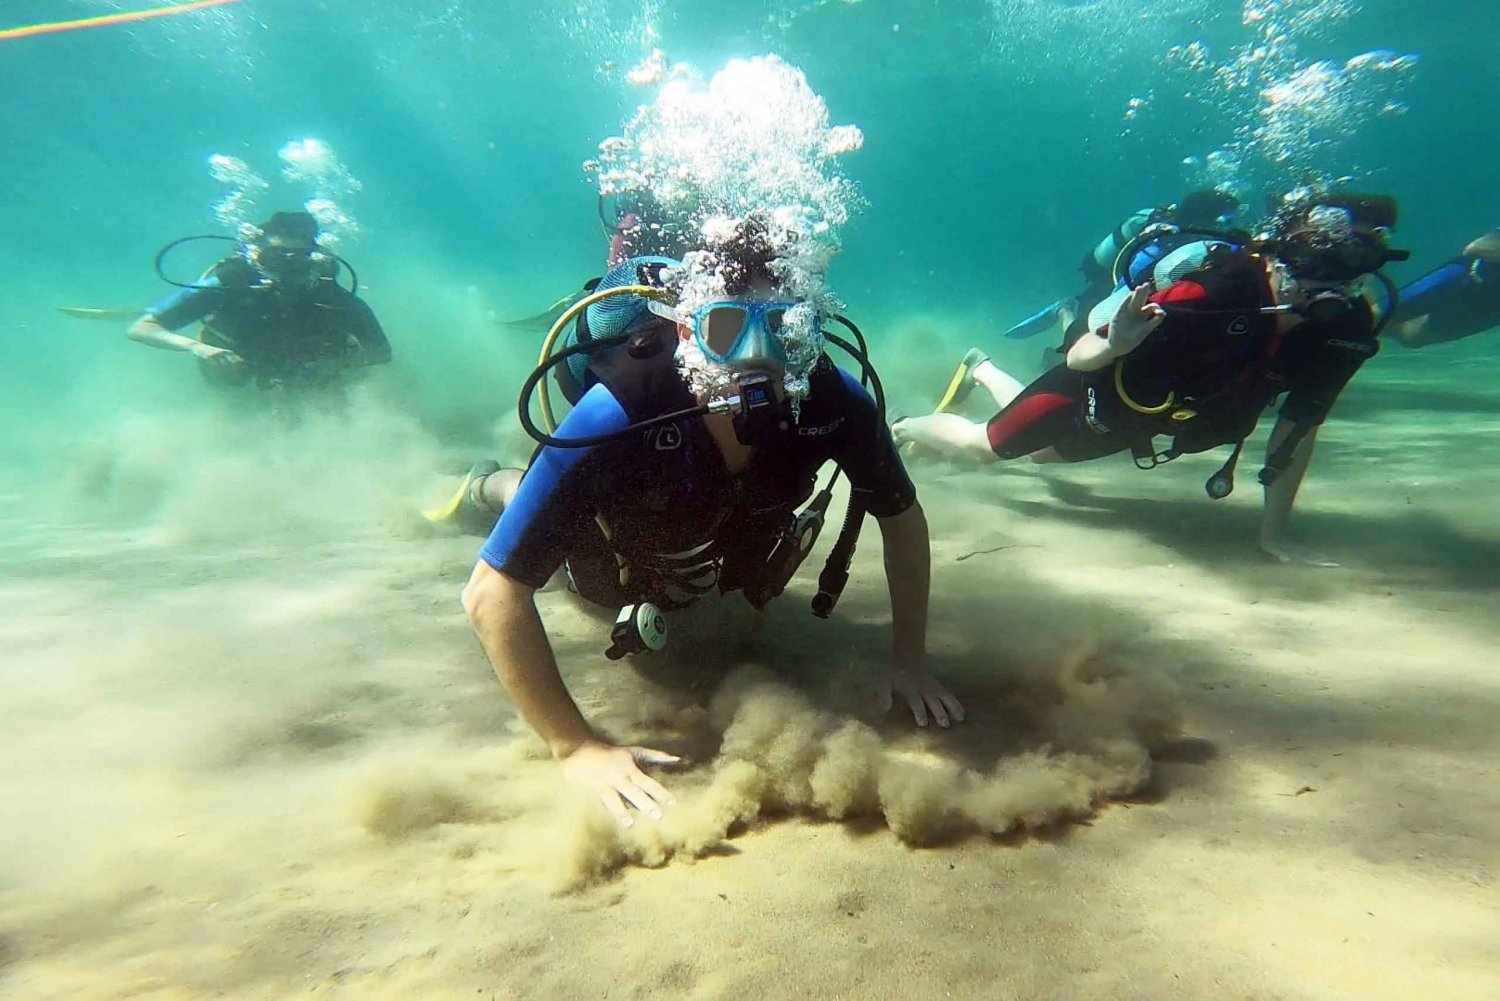 Côte Est d'Athènes : Découvrez la plongée sous-marine à Nea Makri